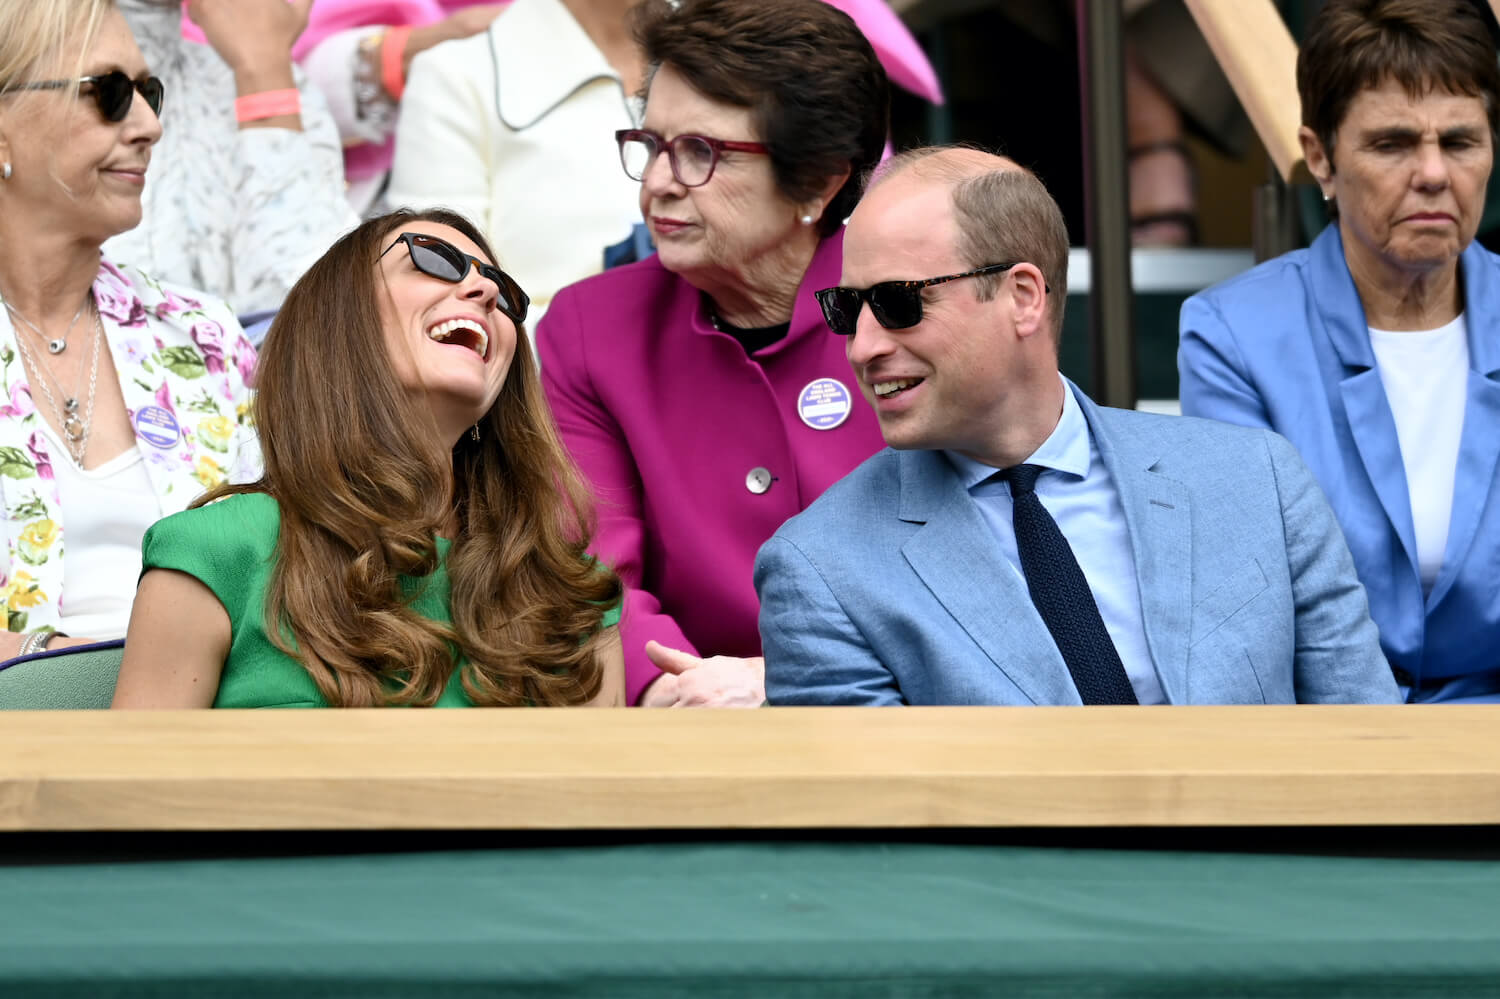 Kate Middleton seen laughing at Prince William joke during Wimbledon match